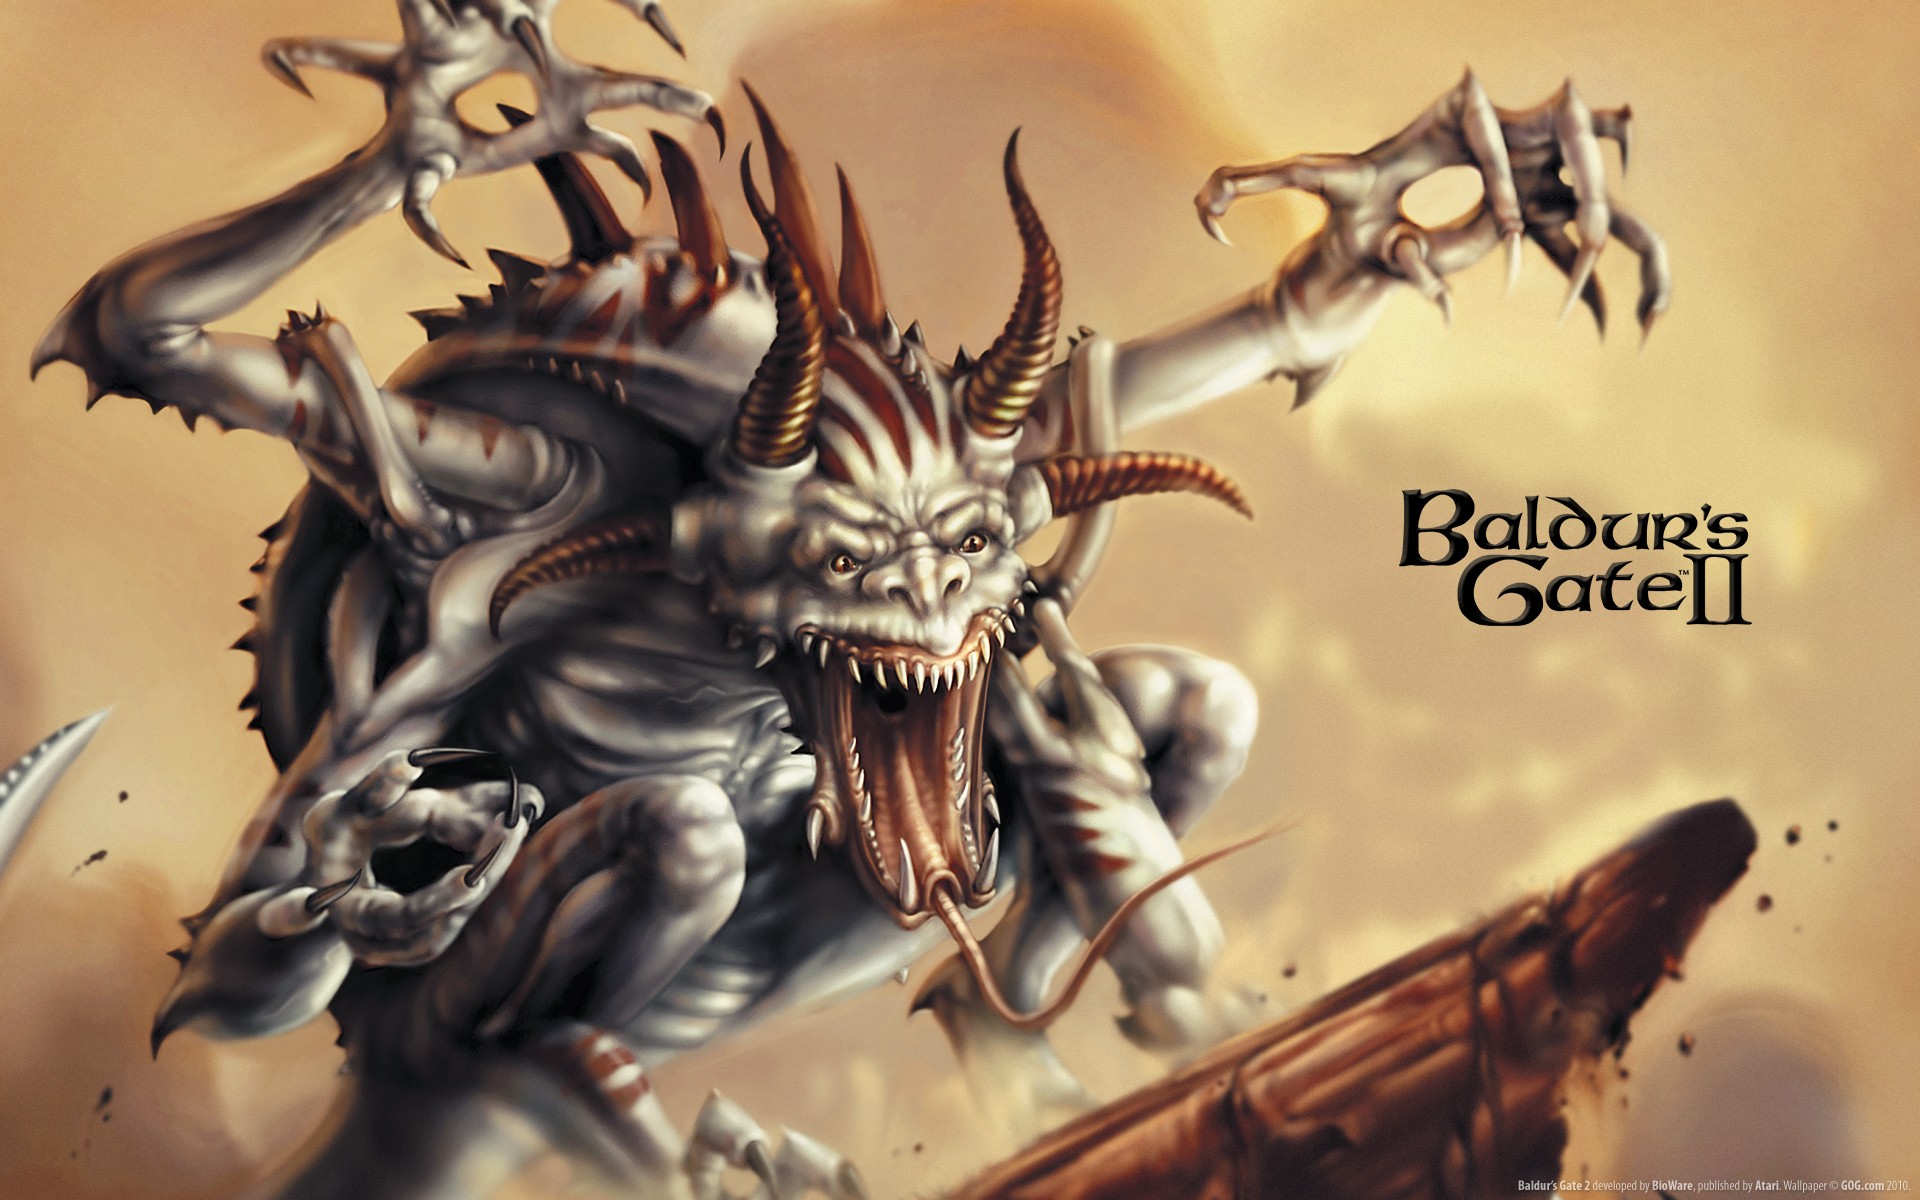 Baldurs Gate - desktop wallpaper